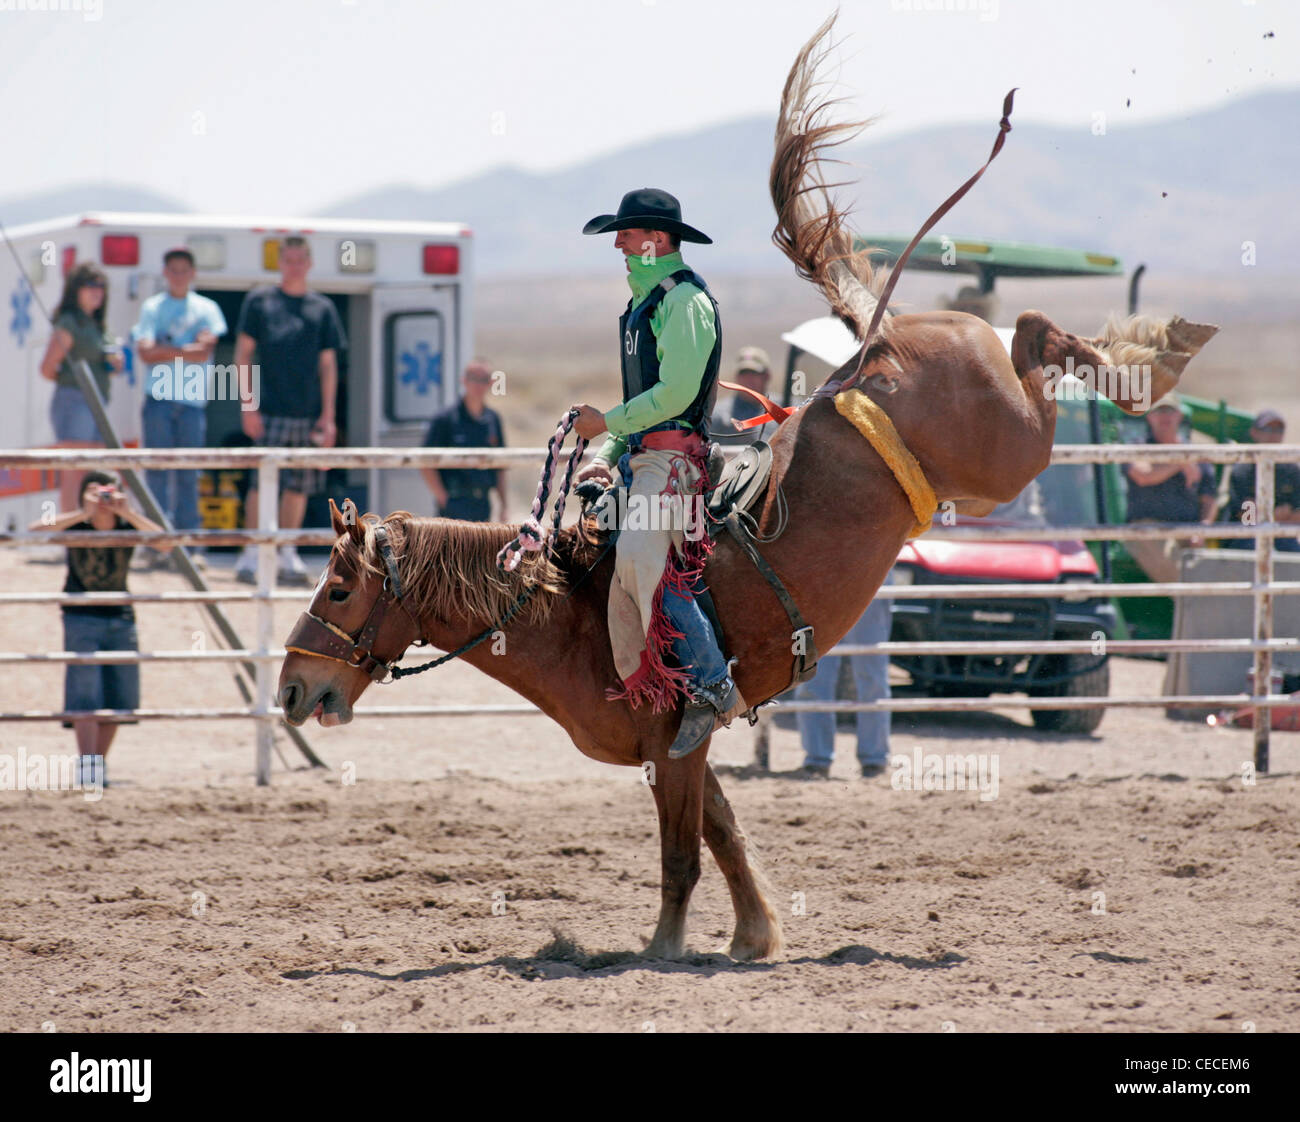 Socorro, Nuovo Messico, Stati Uniti d'America. Concorrente nel bronco riding evento durante il rodeo annuale tenuto in Socorro, Nuovo Messico. Foto Stock